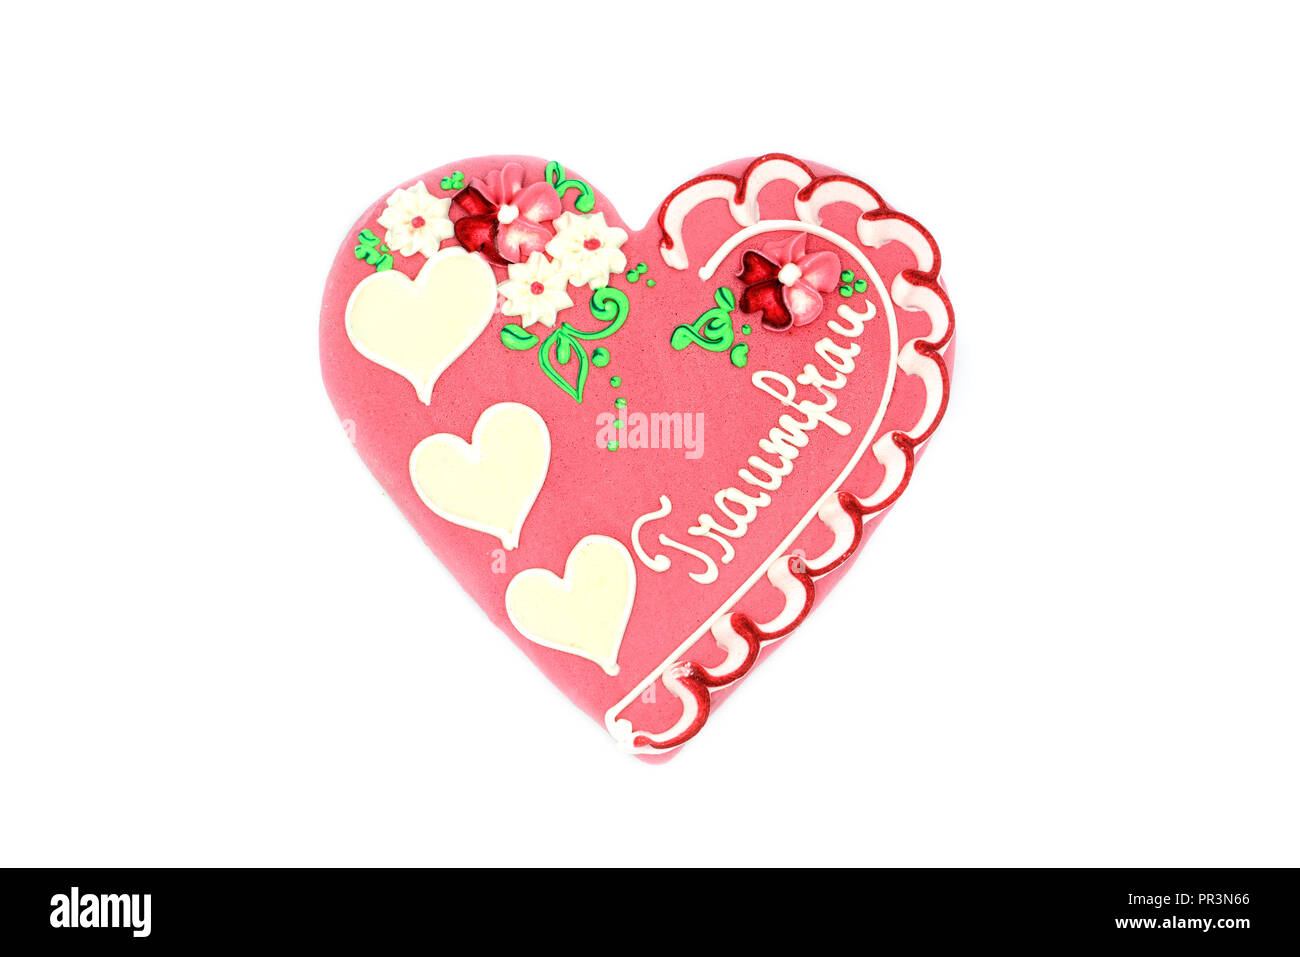 Lebkuchen Herz Valentinstag Geschenk mit deutschen Wort Traumfrau (engl.  Traum Frau) auf weißem Hintergrund isoliert Stockfotografie - Alamy